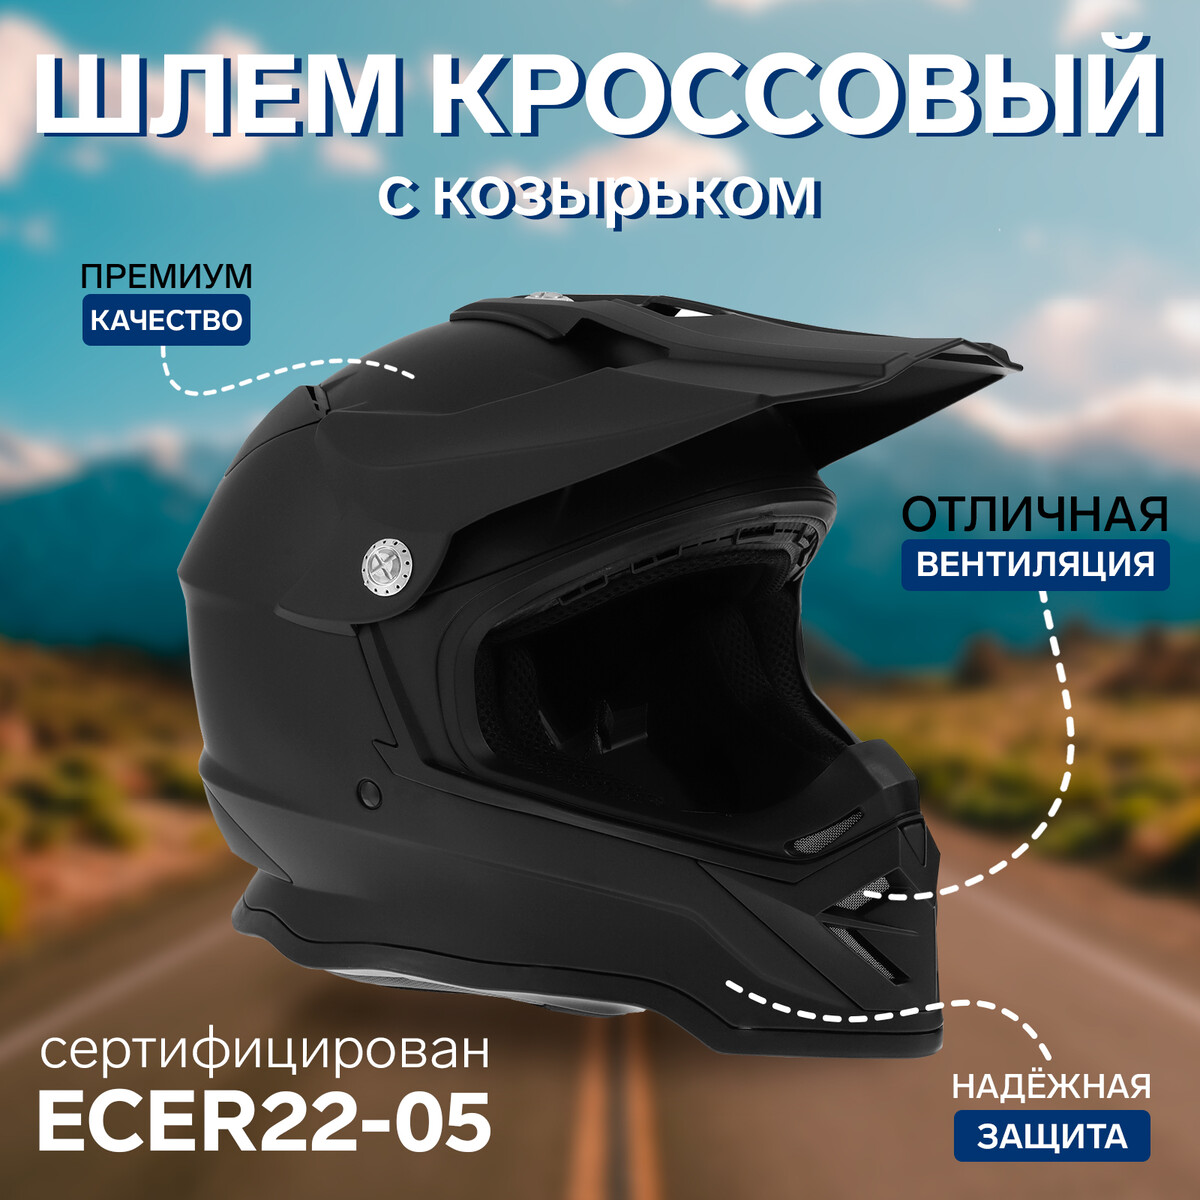 Шлем кроссовый, размер l (59-60), модель - bld-819-7, черный матовый